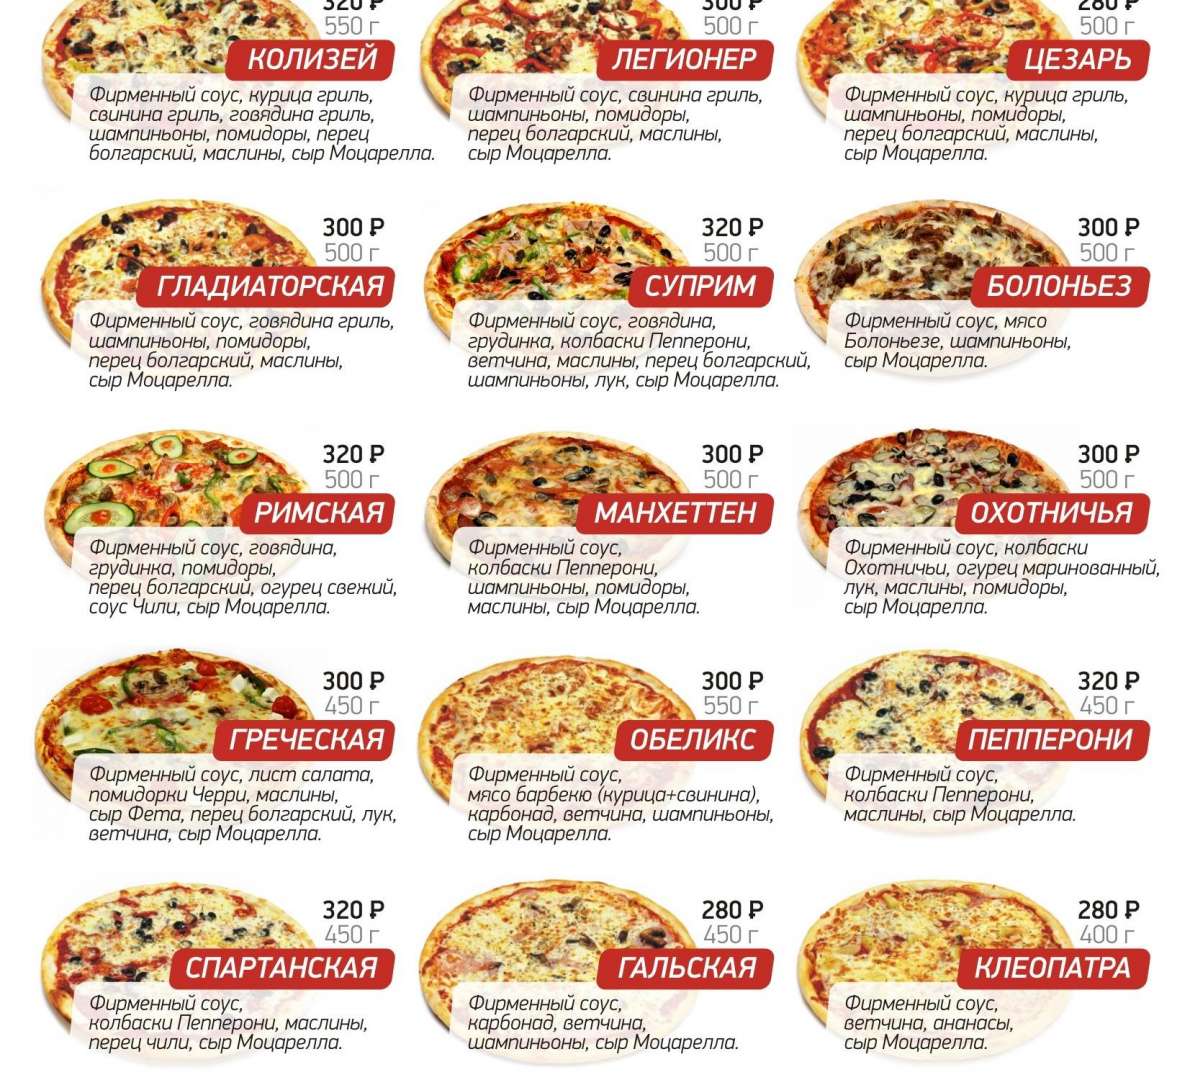 ассортимент пиццы в картинках и рецепты фото 21